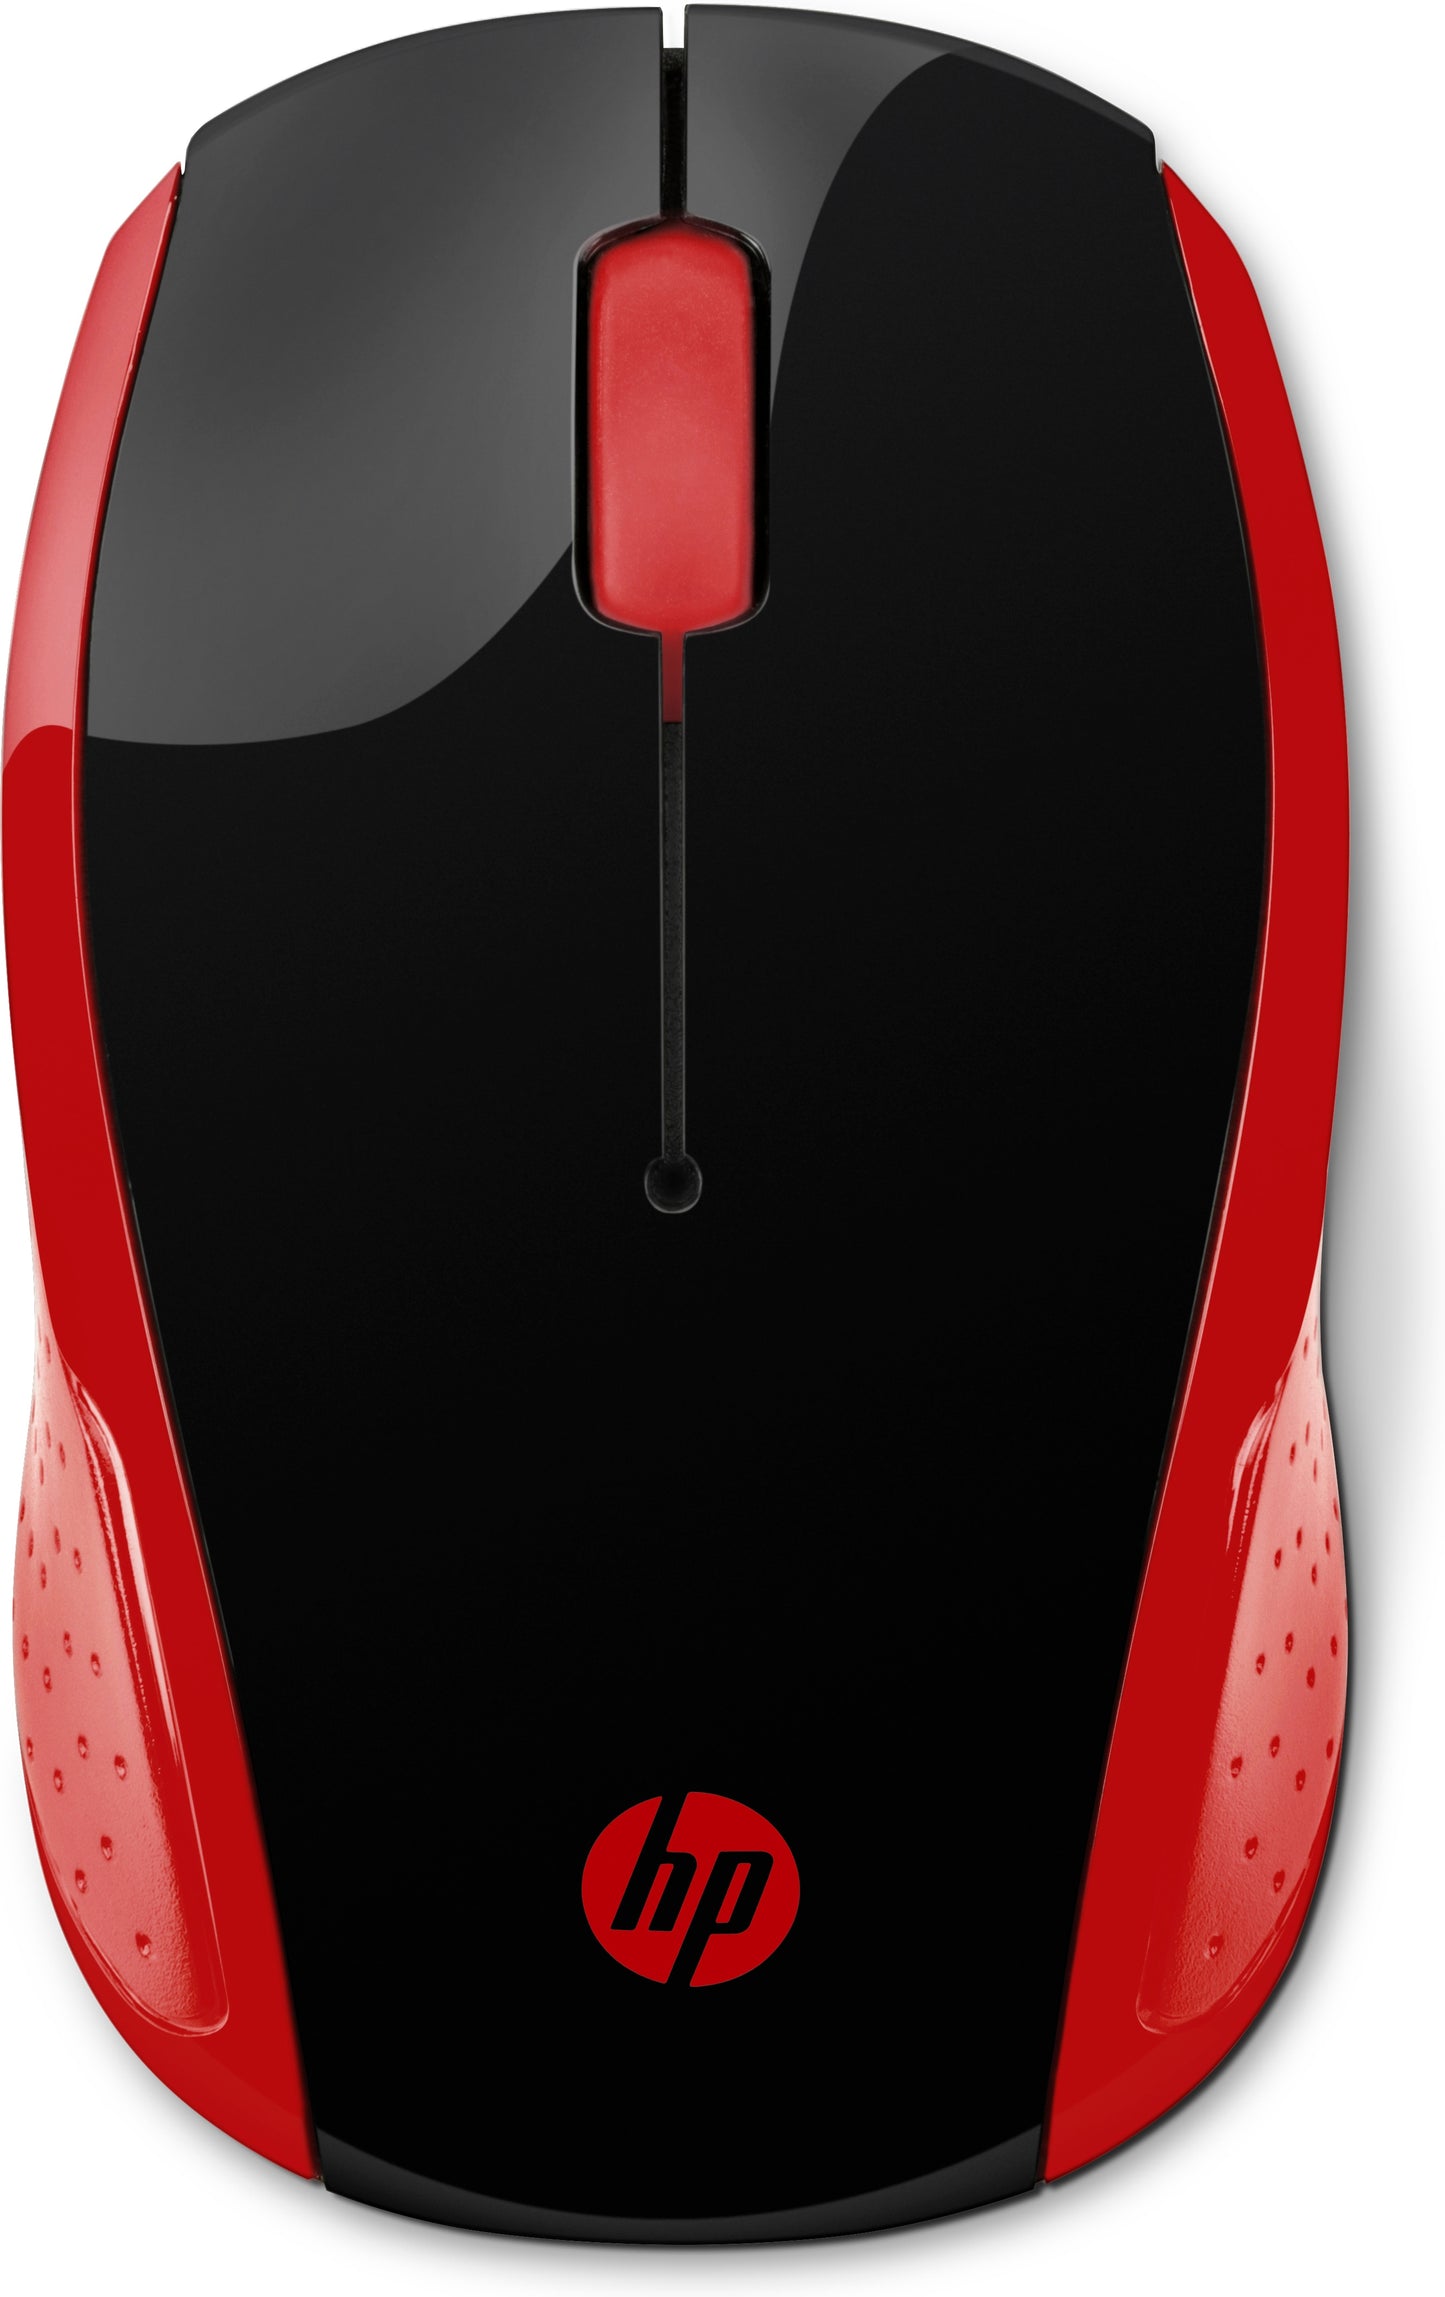 HP :n langaton hiiri 200 (syvänpunainen)